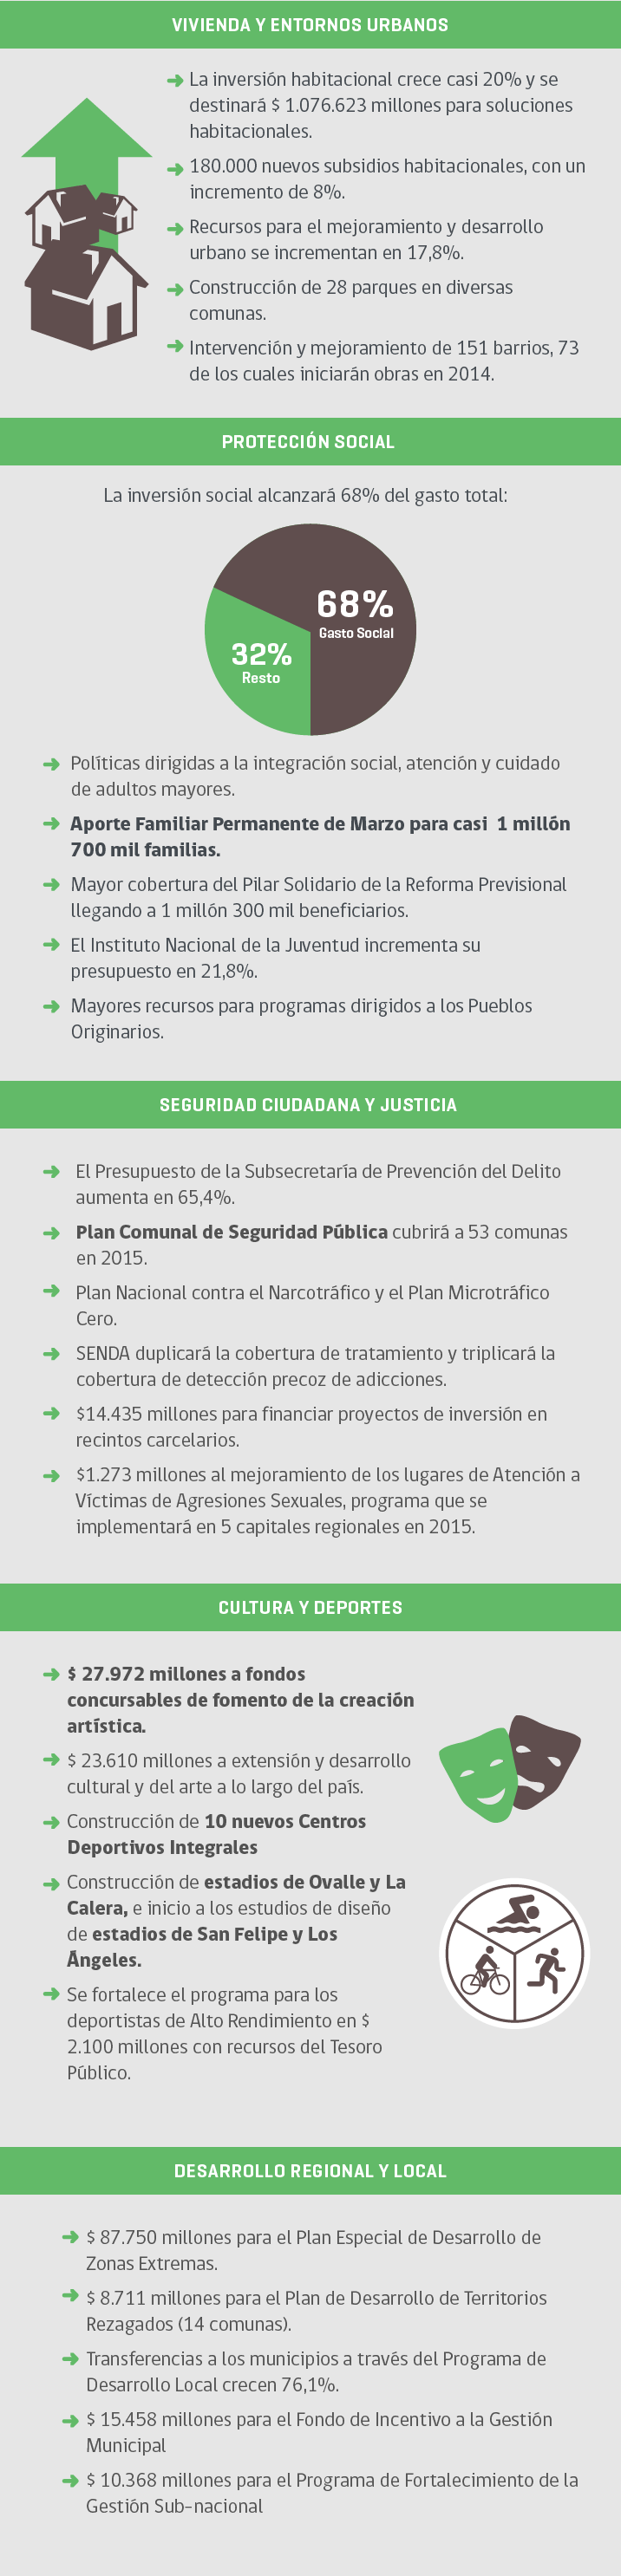 Prioridades Ley de Presupuesto 2015